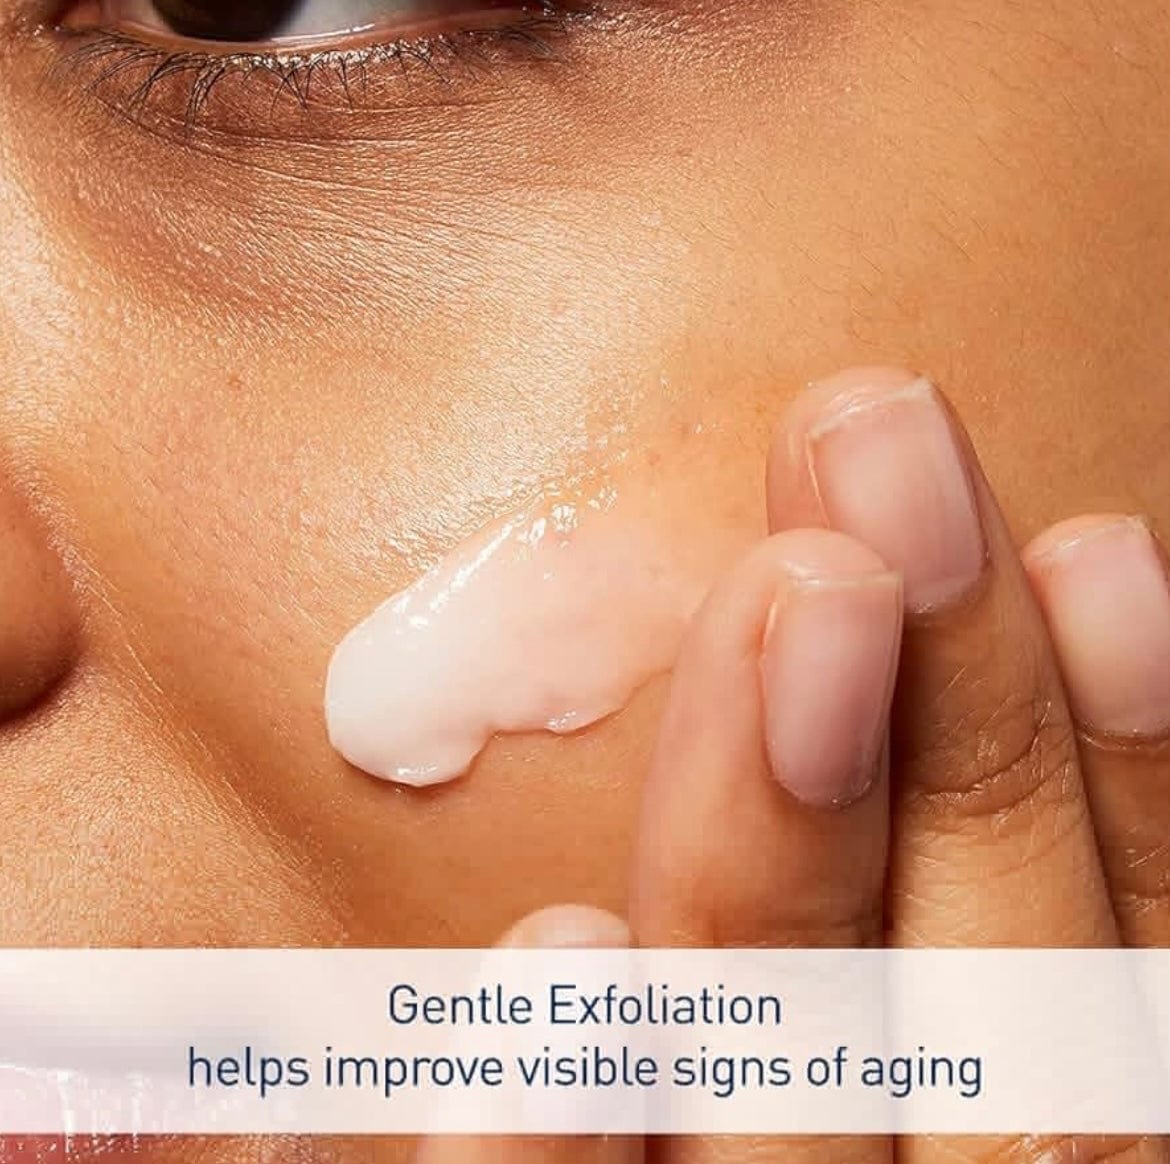 CeraVe Skin Renewing Nightly Exfoliating Treatment | Suero facial antienvejecimiento con ácido glicólico, ácido láctico y ceramidas | Corrector de manchas oscuras para la cara